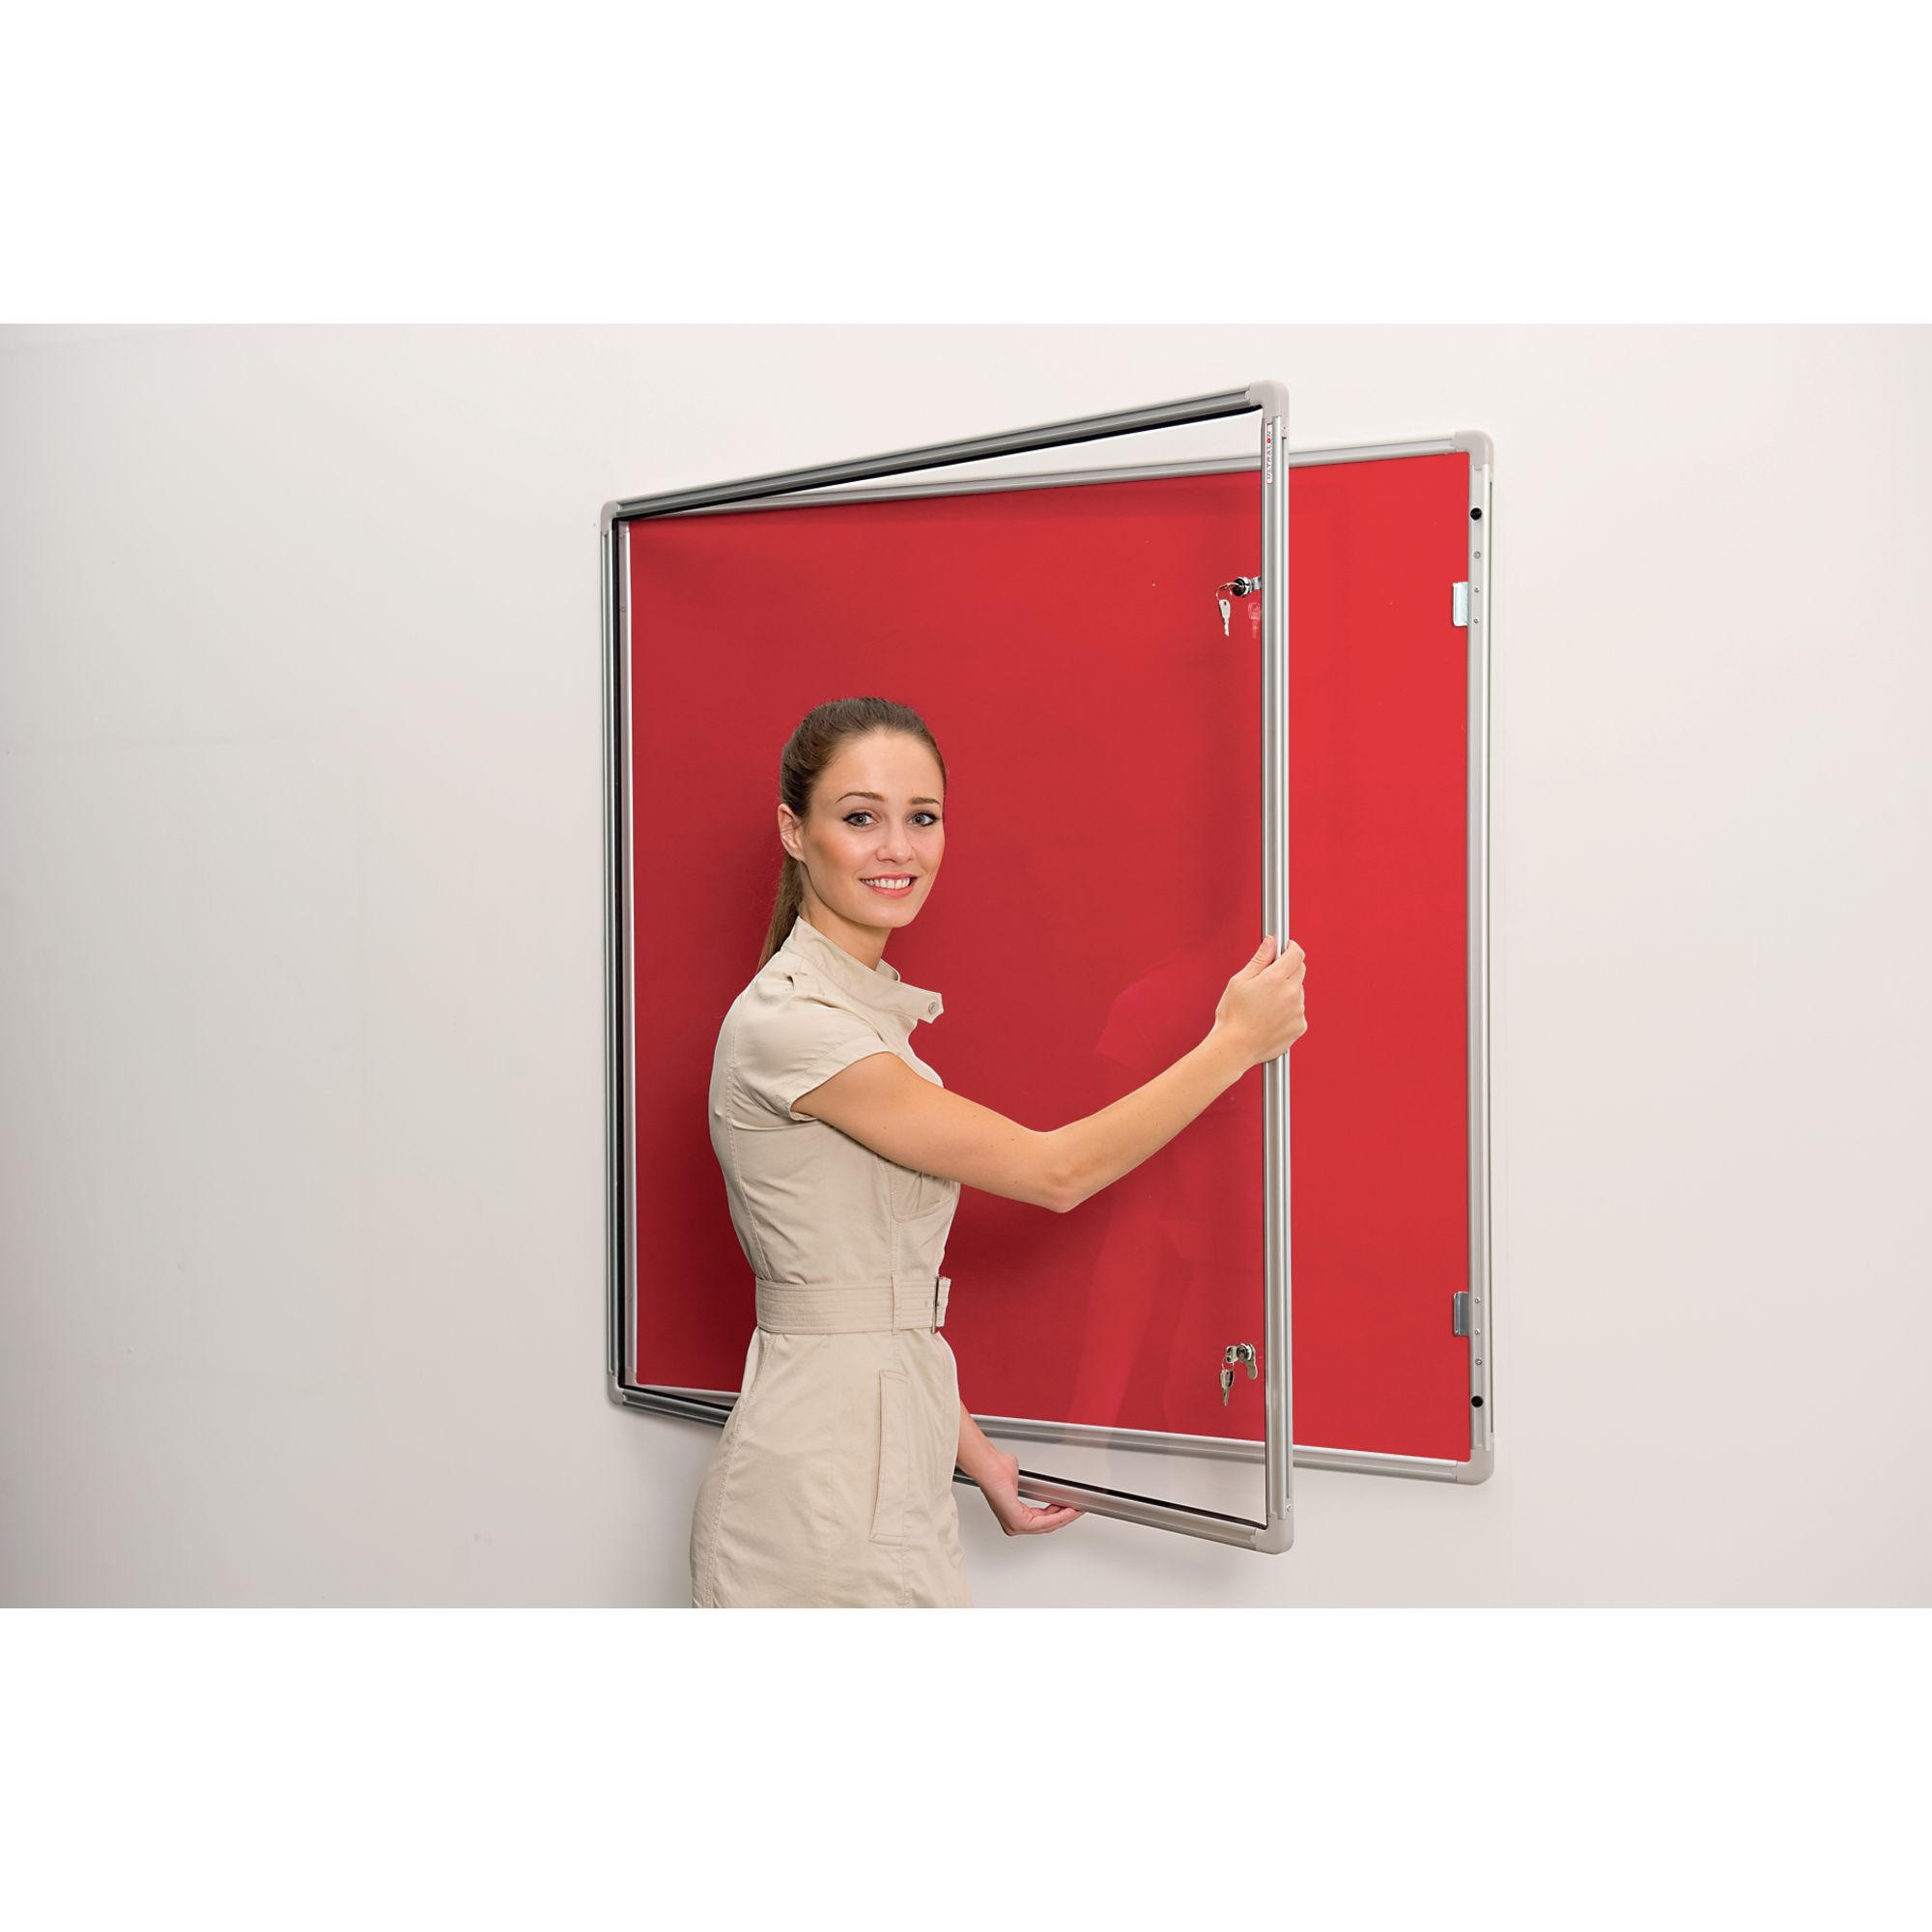 Lockable Aluminium Framed Noticeboards - Red 9x6